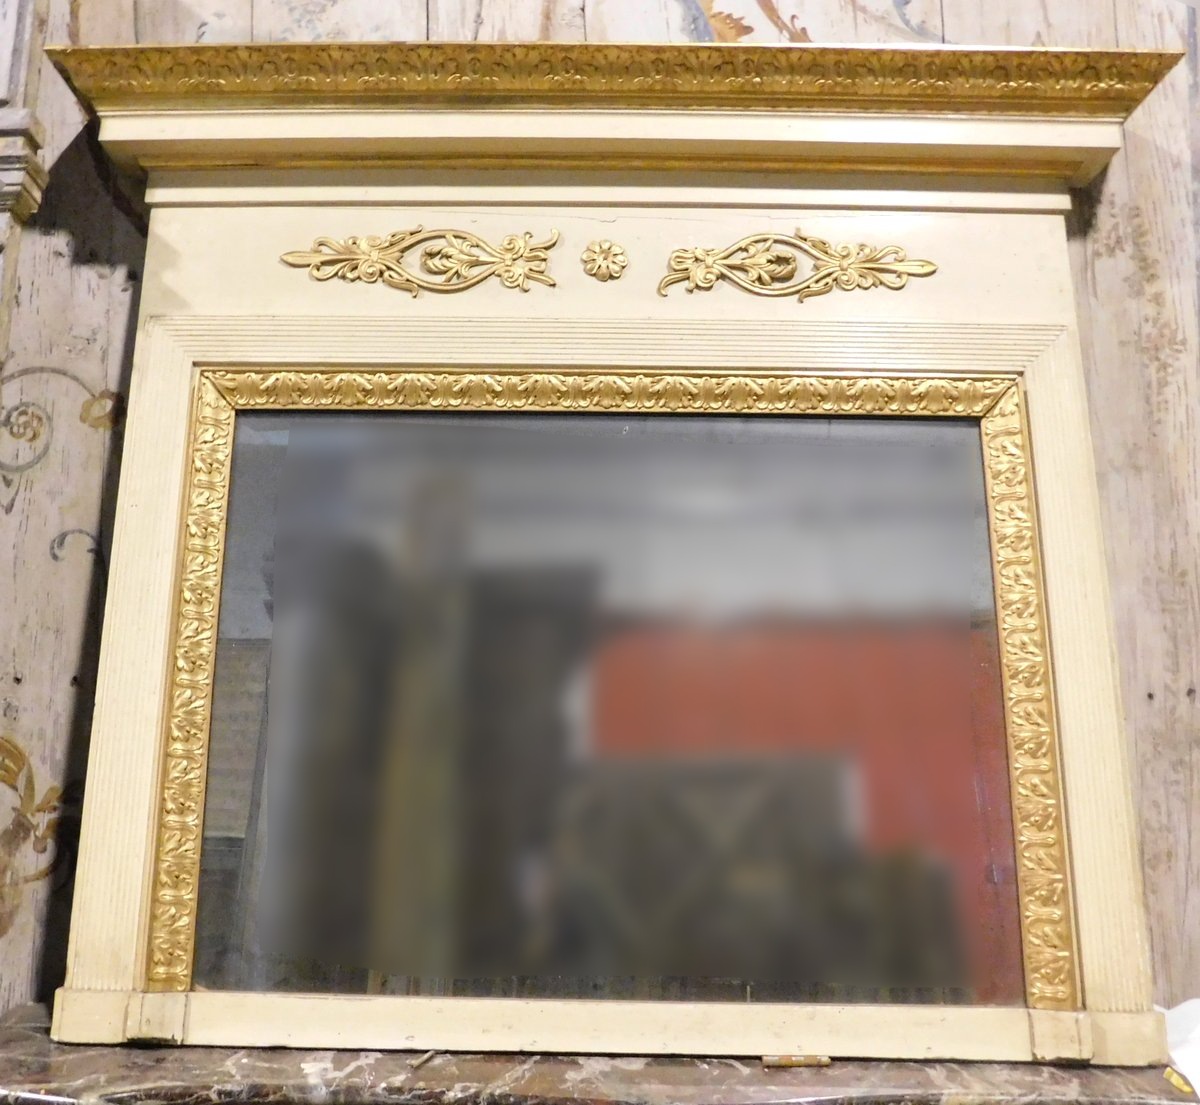 specc260 - specchiera laccata e dorata, epoca '800, misura cm l 160  x h 136